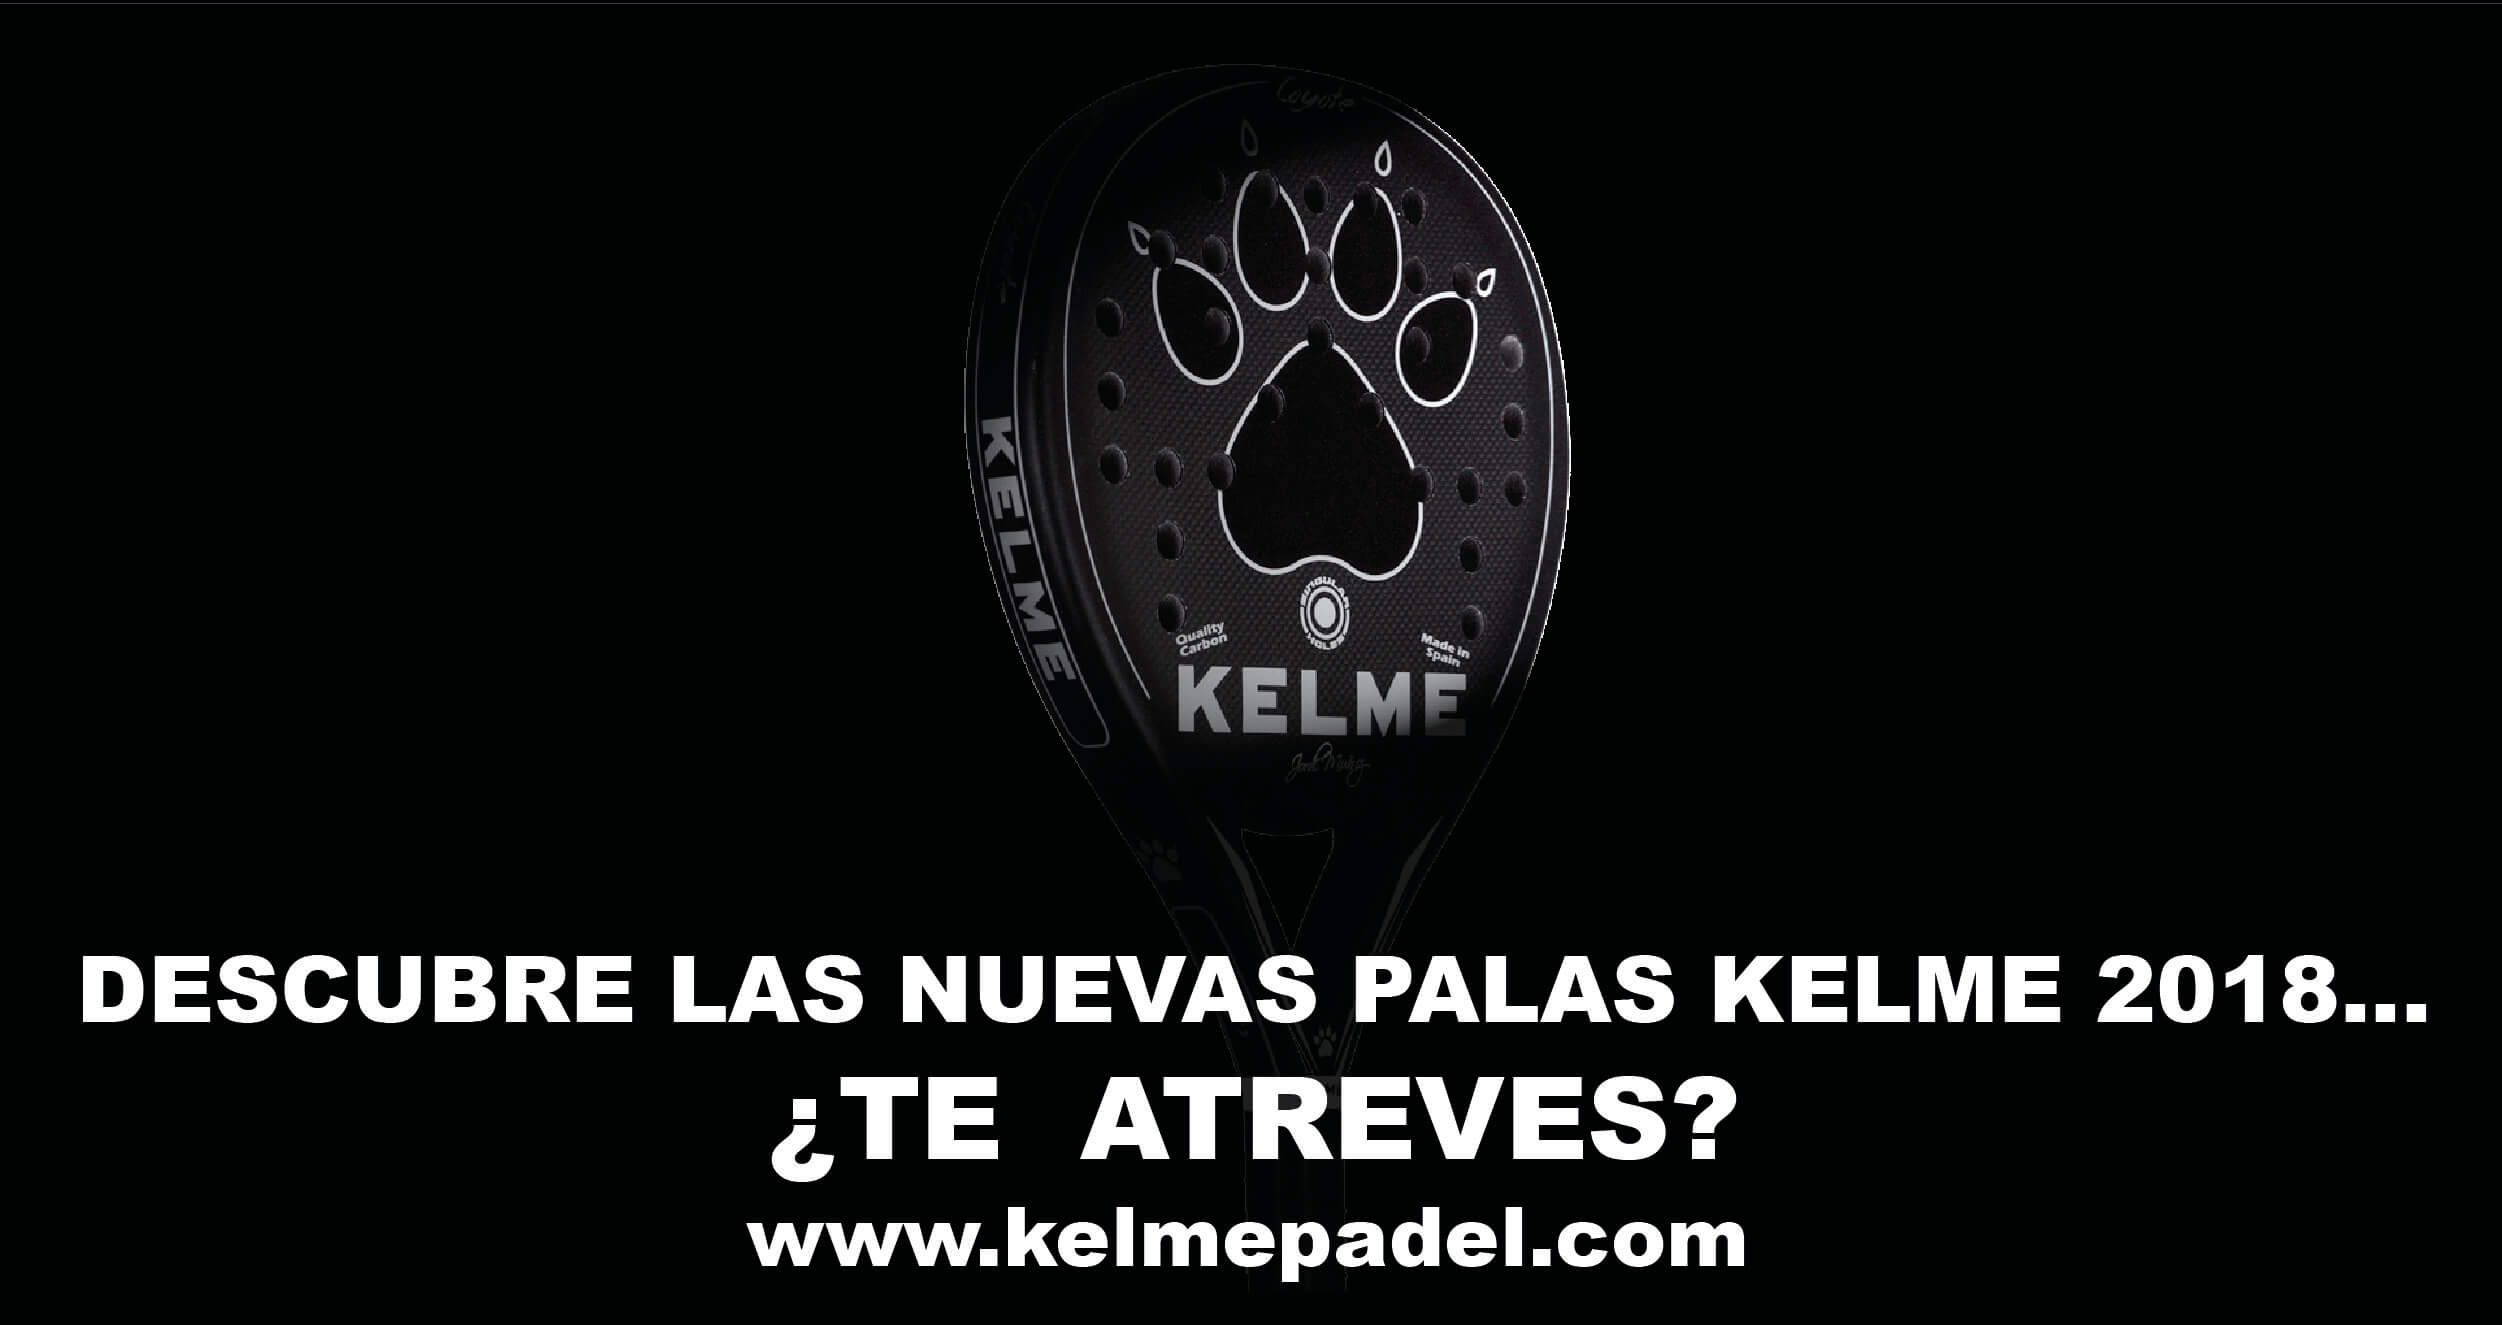 Kelme Padel 2018… ¡pronto en tiendas!